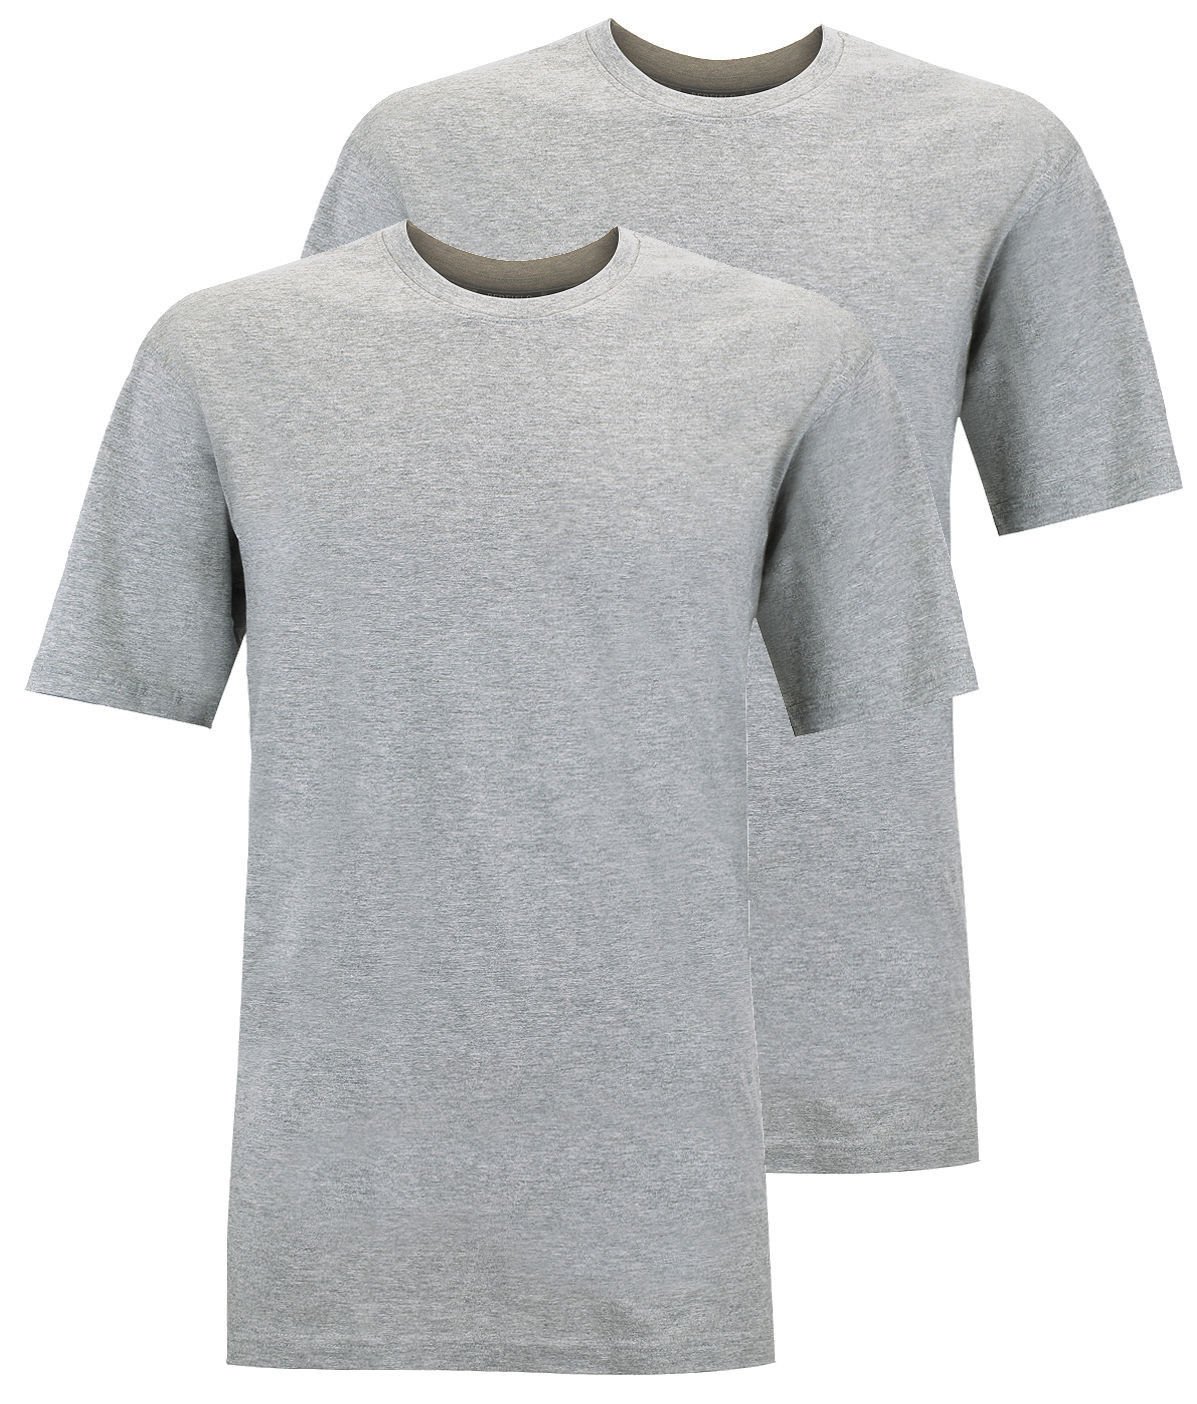 Redfield Doppelpack T-Shirt Übergröße grau Melange, Größe:6XL